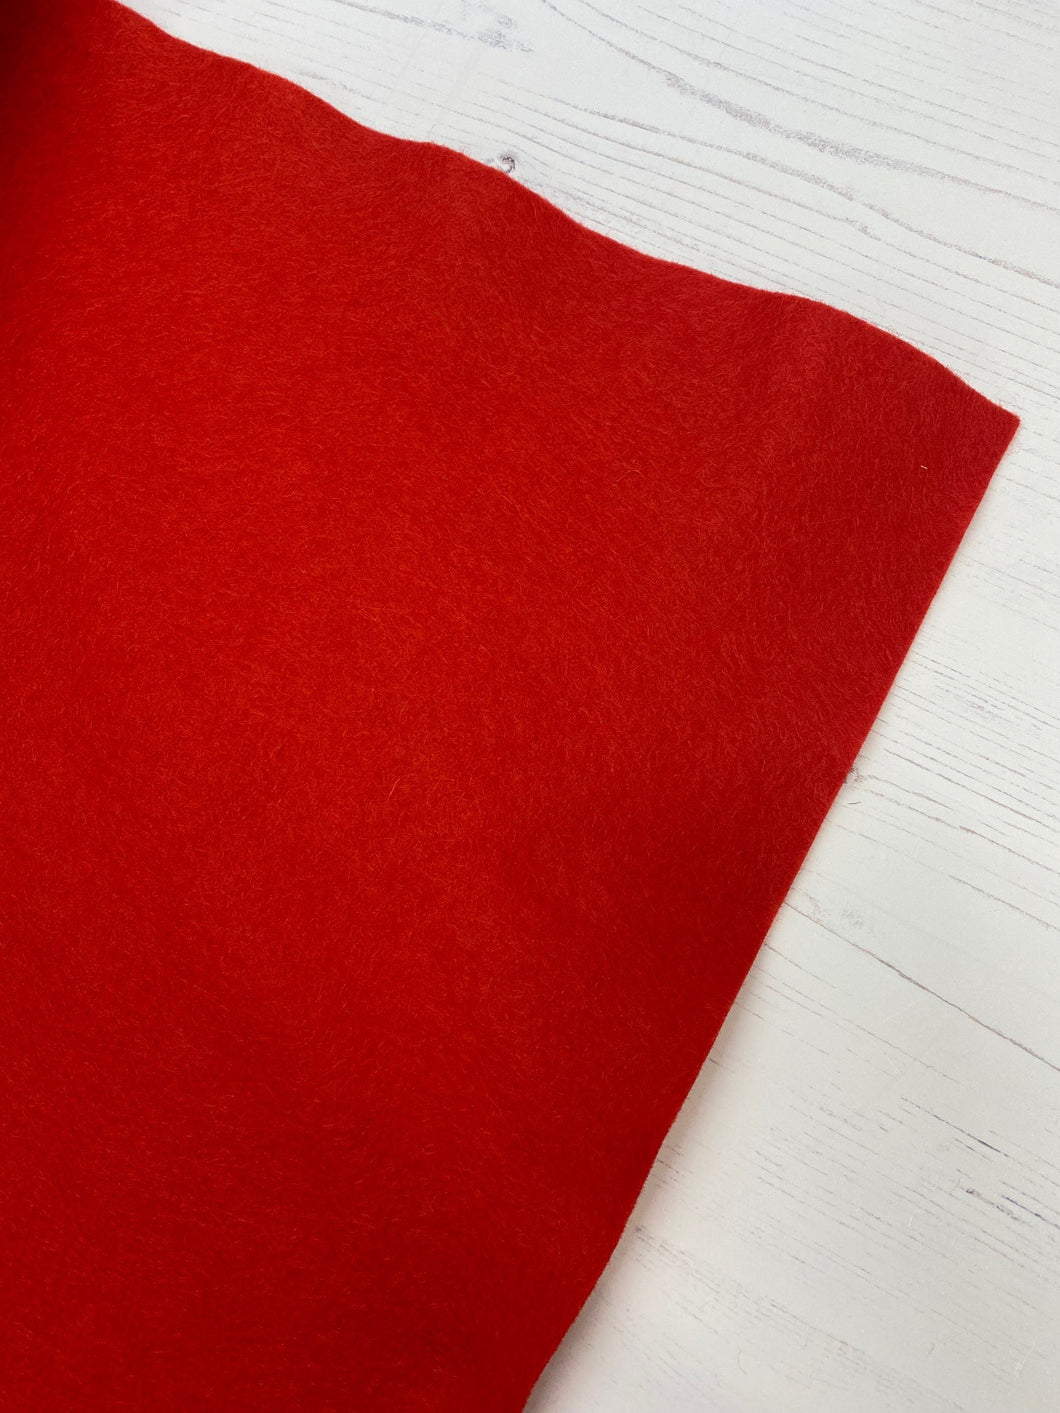 Red Felt Fabric - 1/2mtr